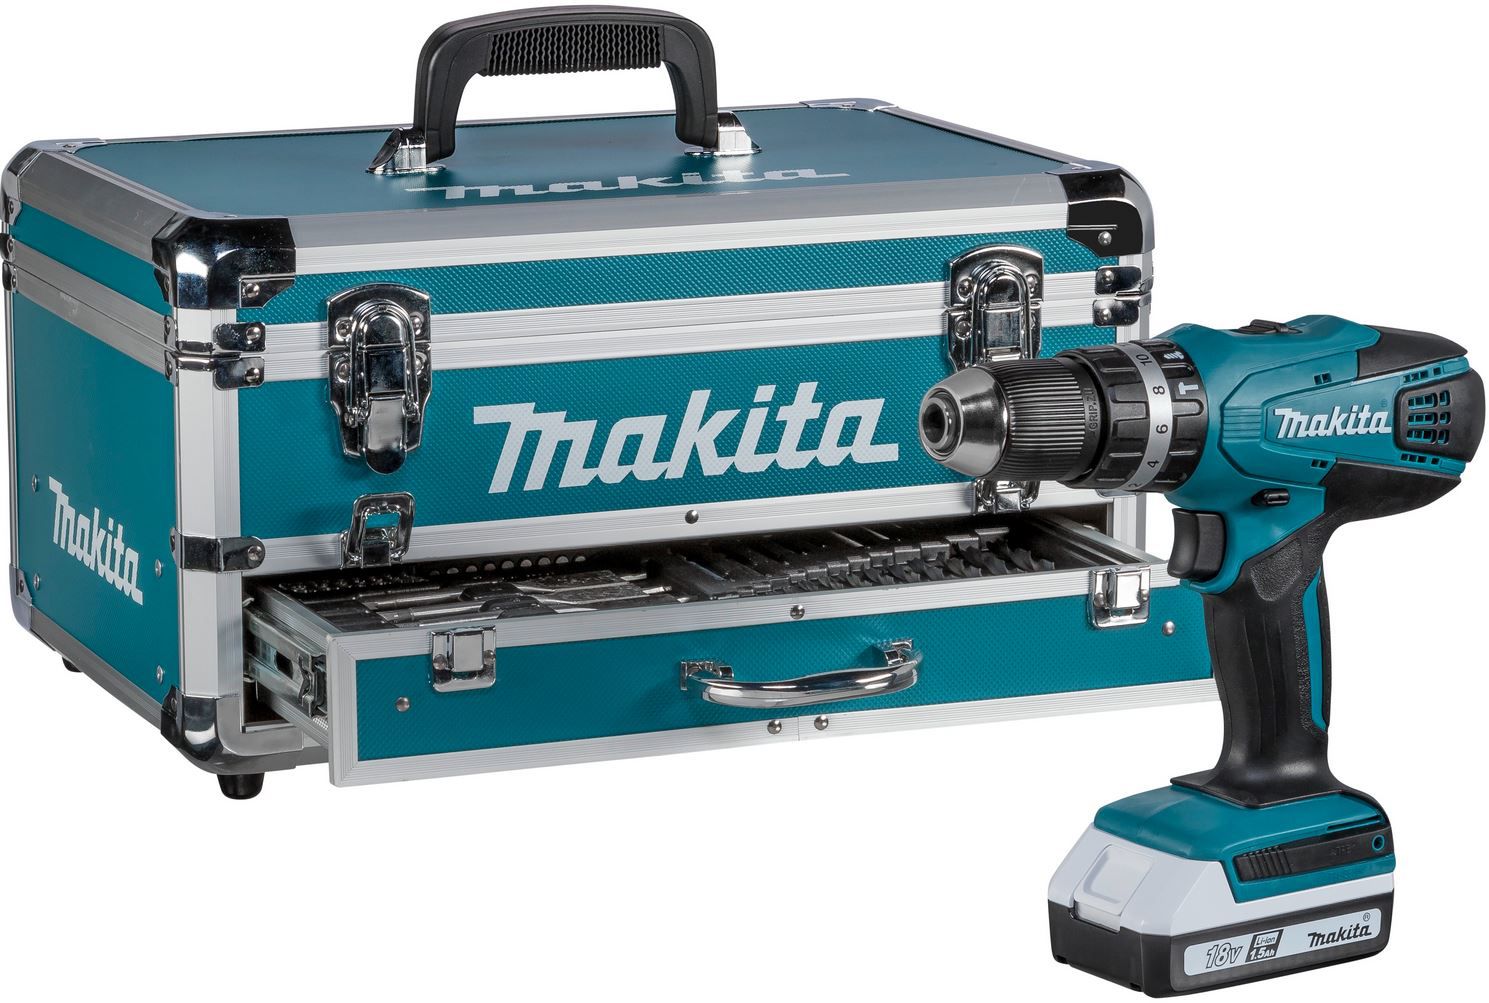 Makita HP457DWEX4 Akku Schlagschrauber mit 2 Akkus, Koffer, 70 Teile Zubehör für 189,95€ (statt 208€)